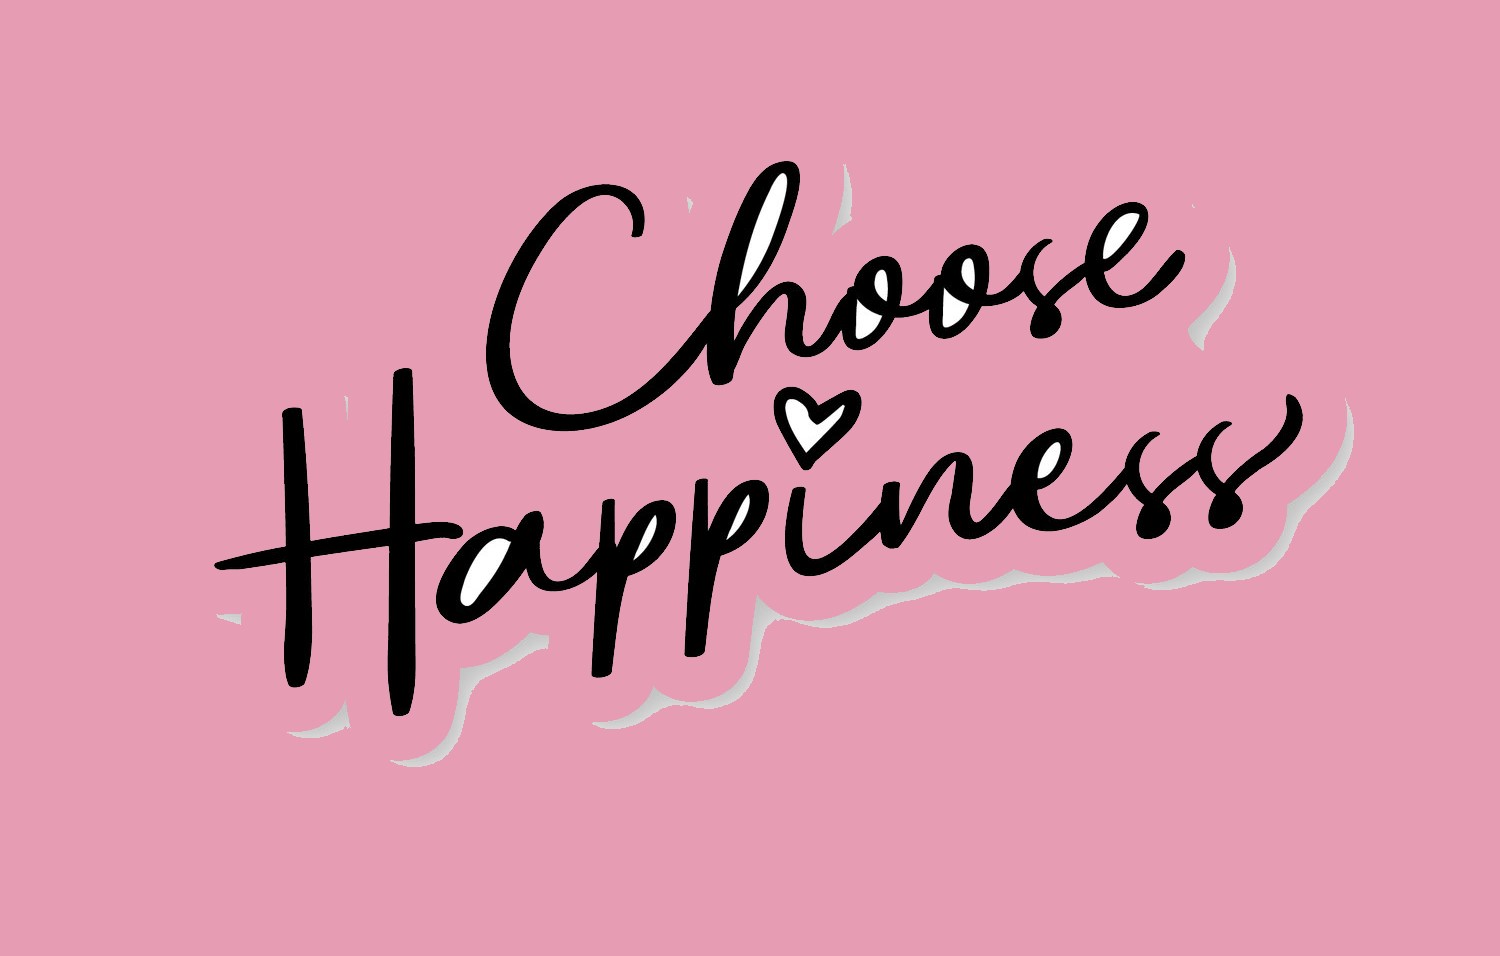 Πώς να είσαι ευτυχισμένος: Γιατί η αυτονομία είναι βασικό συστατικό για την ευτυχία και την ευημερία  